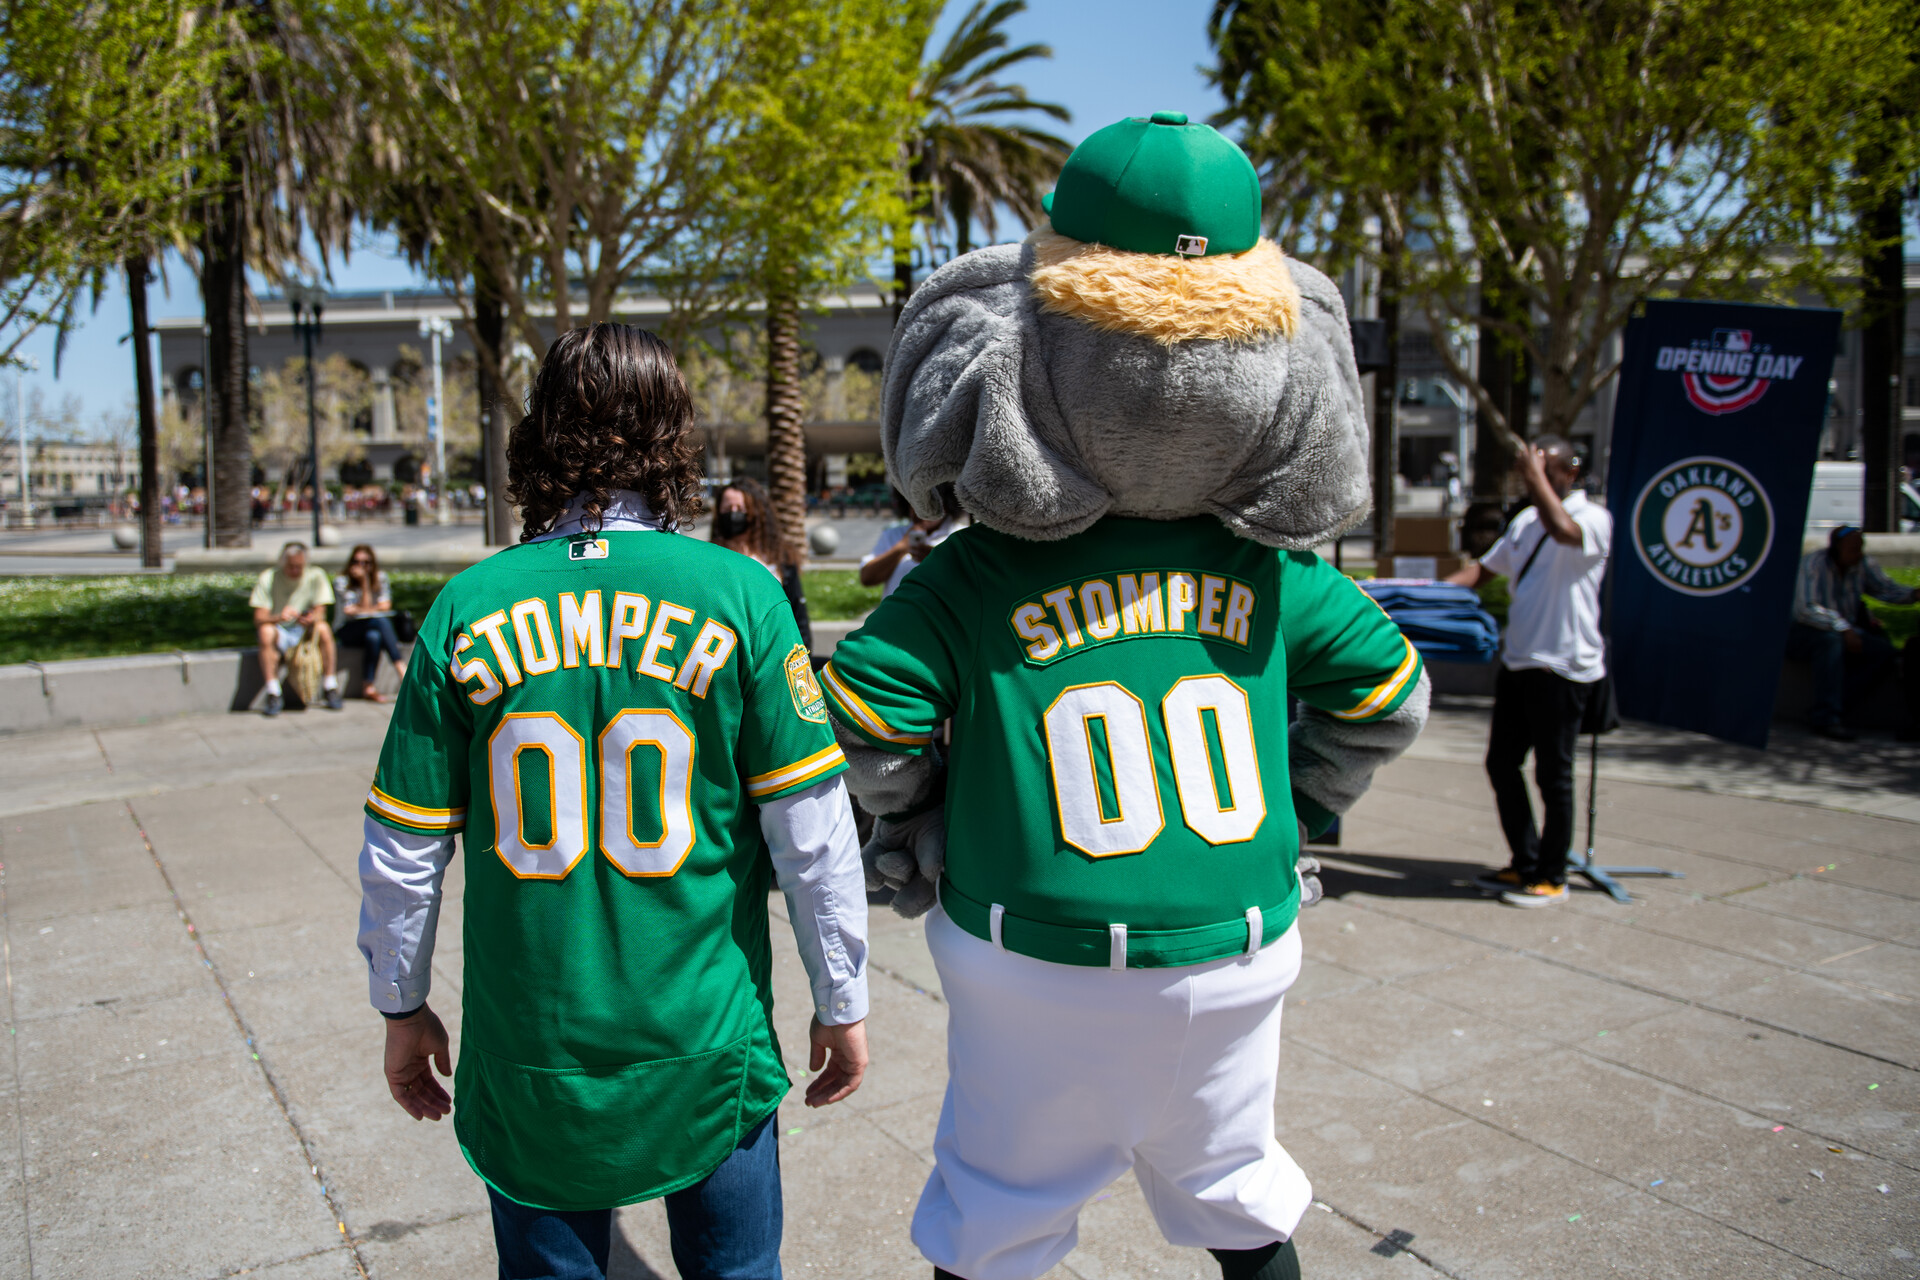 OAKLAND, CA - APRIL 24: Oakland Athletics' mascot 'Stomper' points